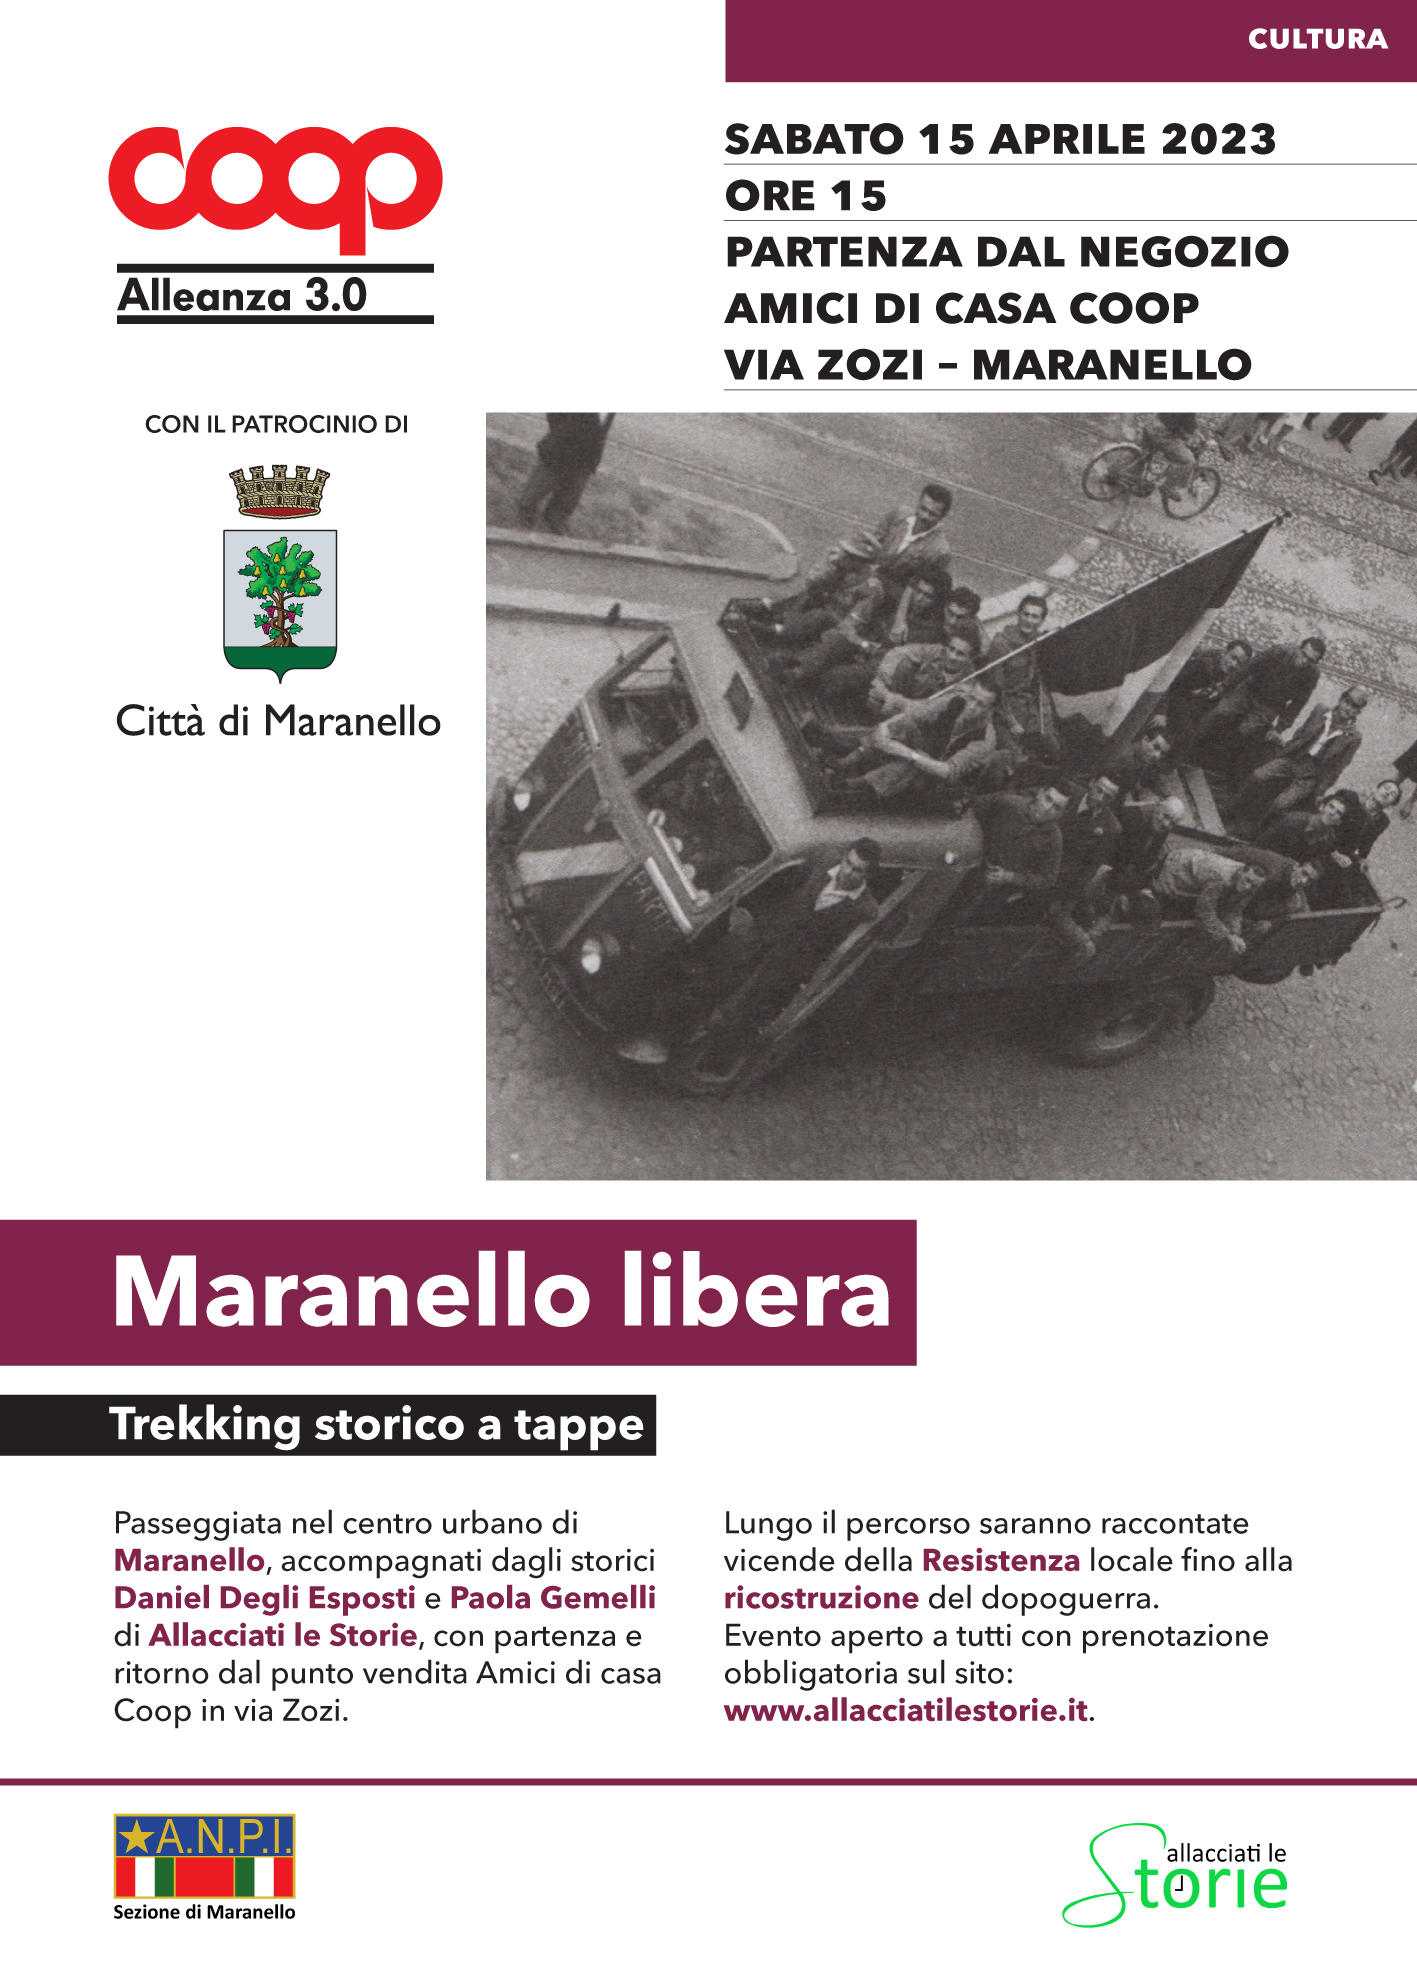 Maranello libera: trekking storico in programma sabato 15 aprile 2023